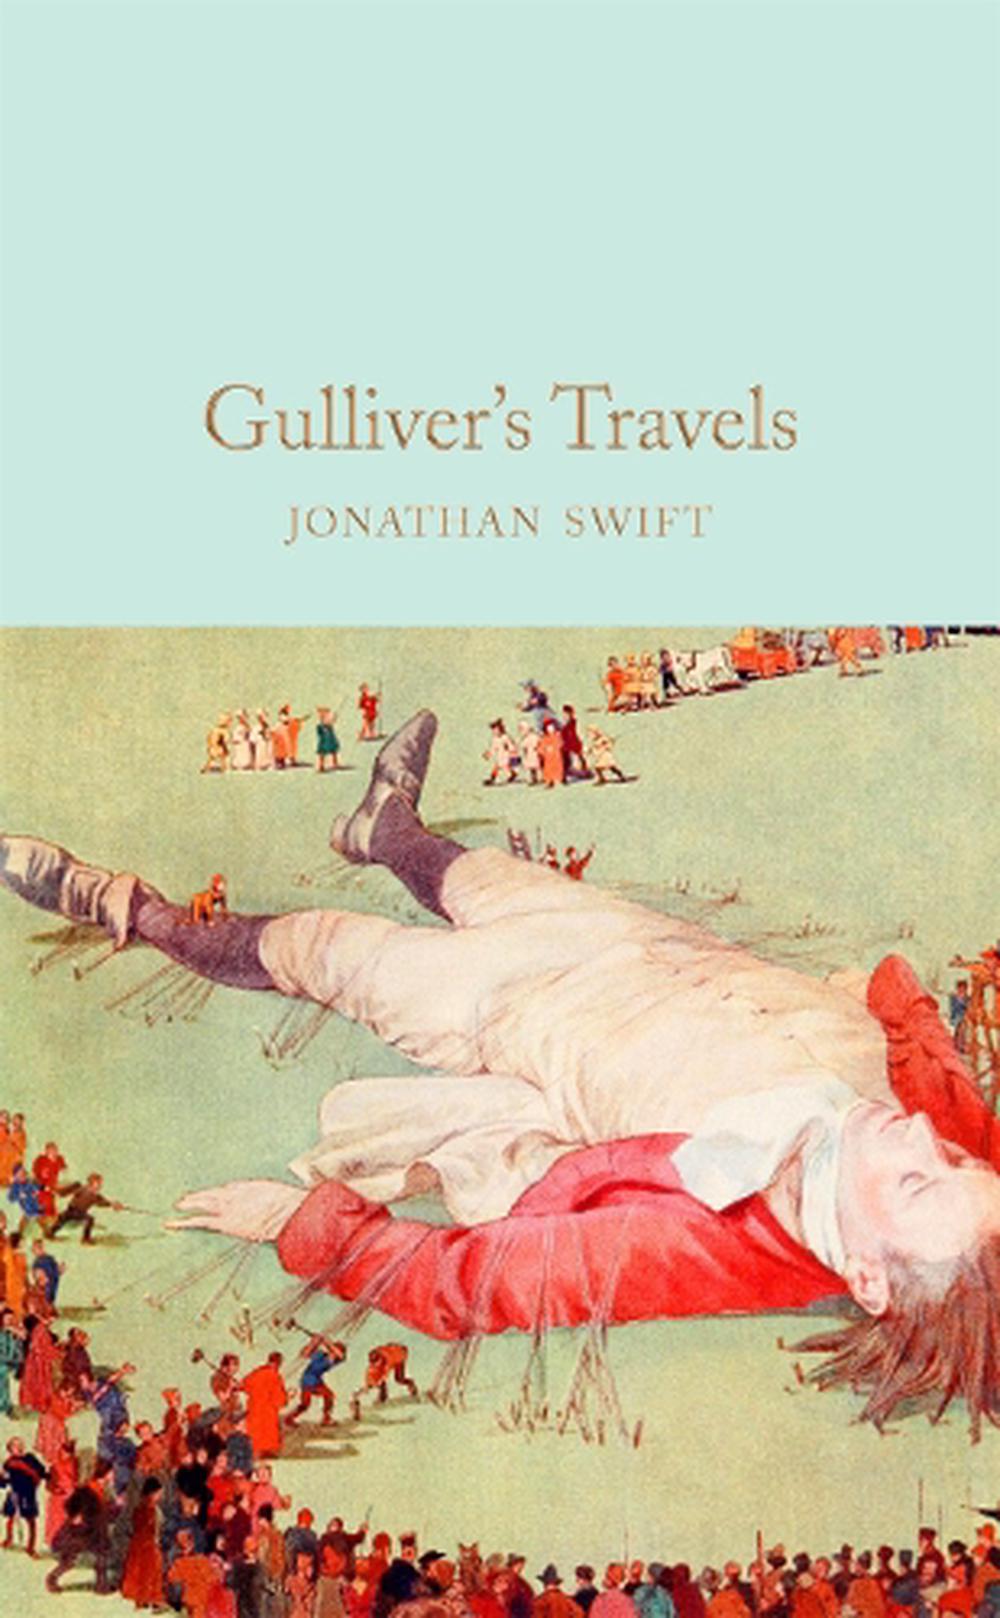 is gulliver's travel novel